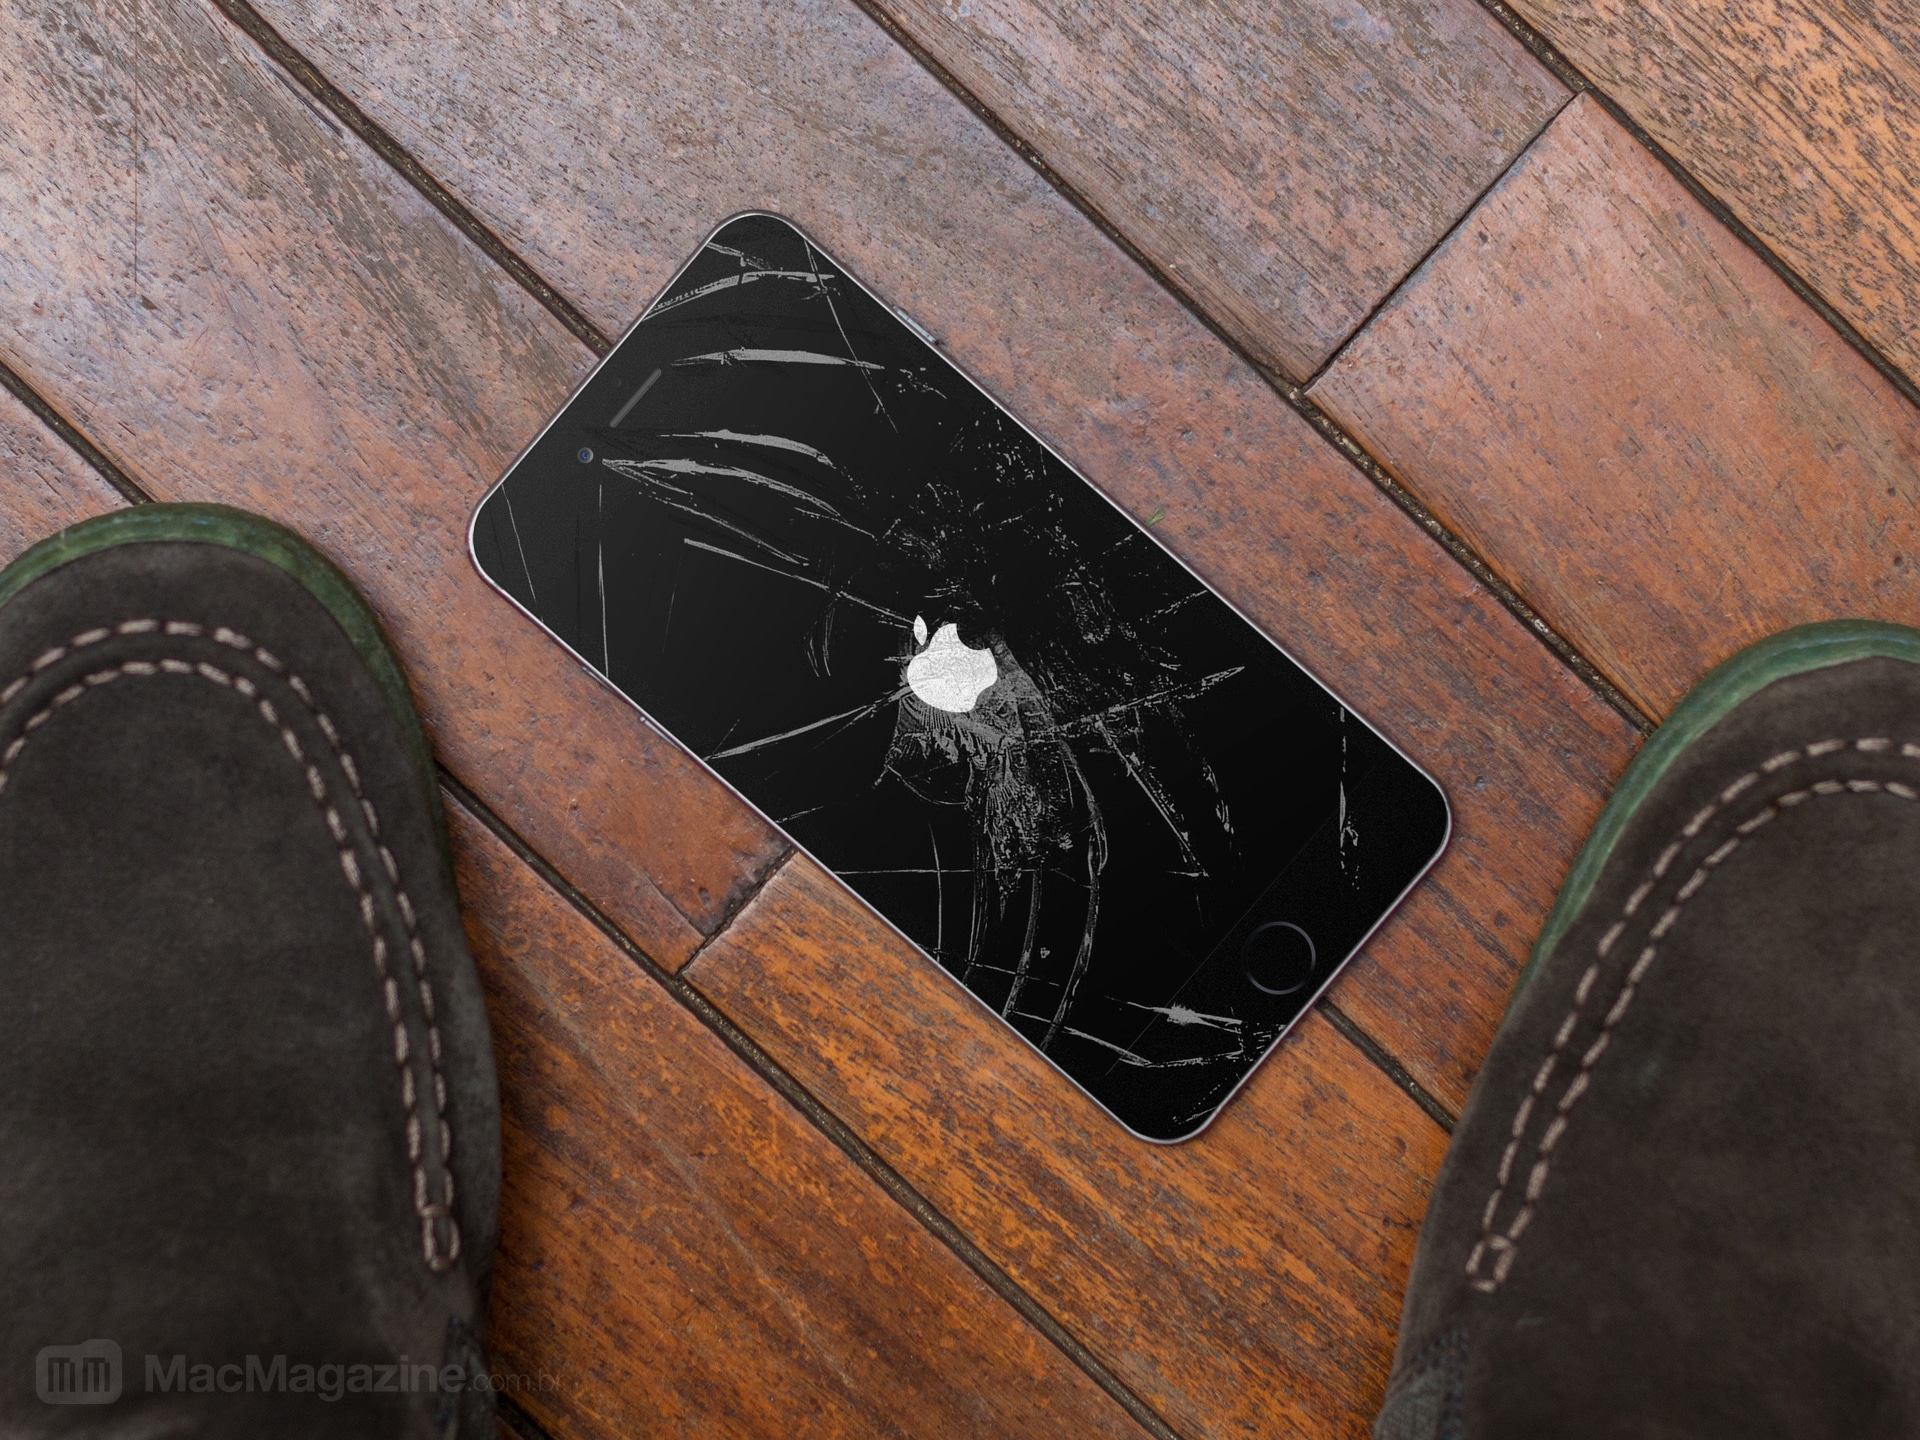 iPhone no chão, quebrado, na tela de boot/inicialização